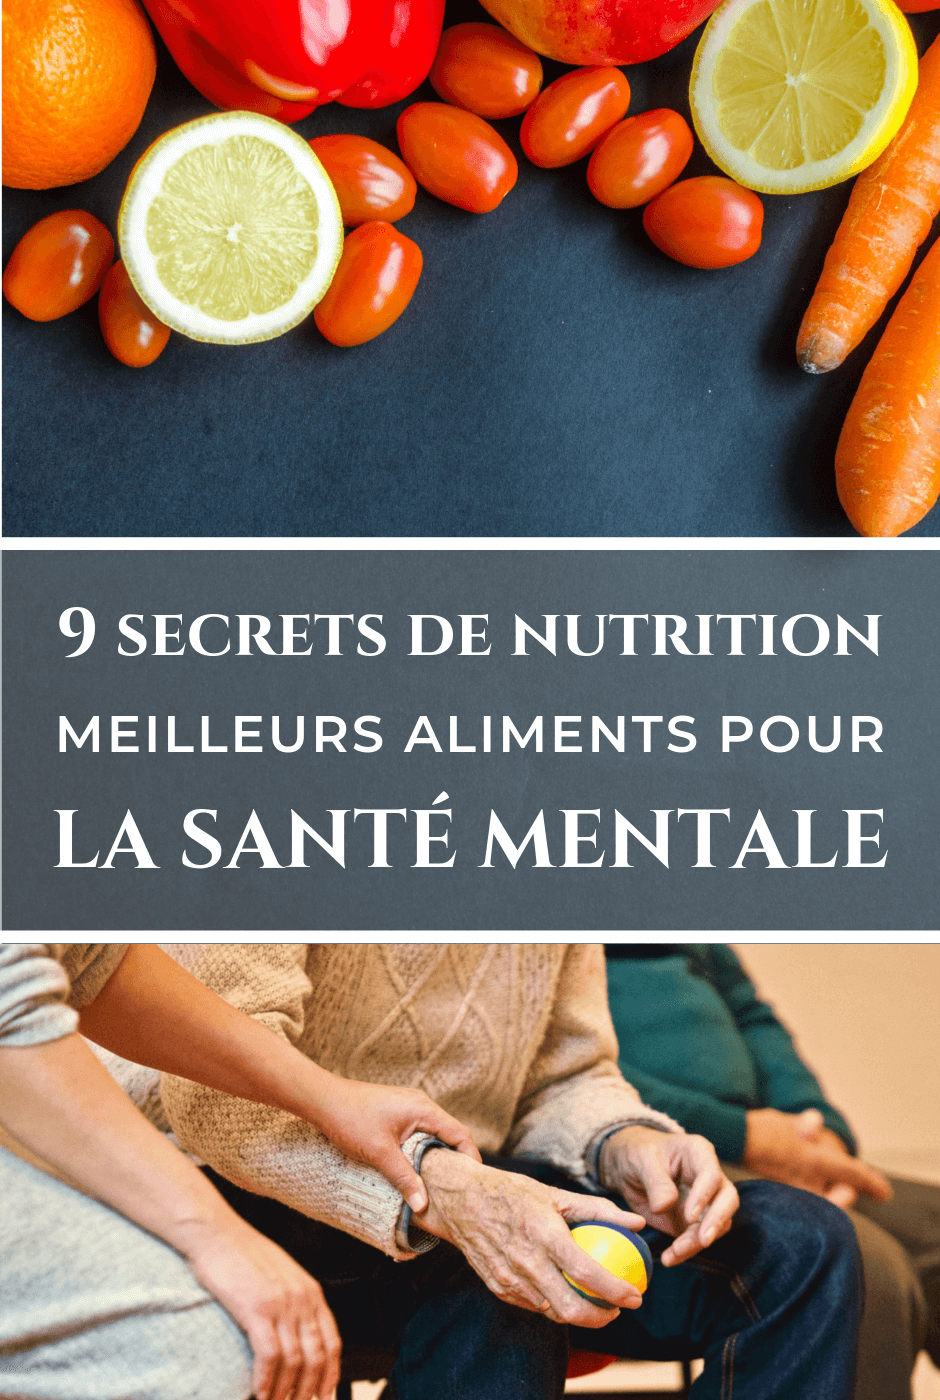 9 SECRETS DE NUTRITION - MEILLEURS ALIMENTS POUR LA SANTÉ MENTALE